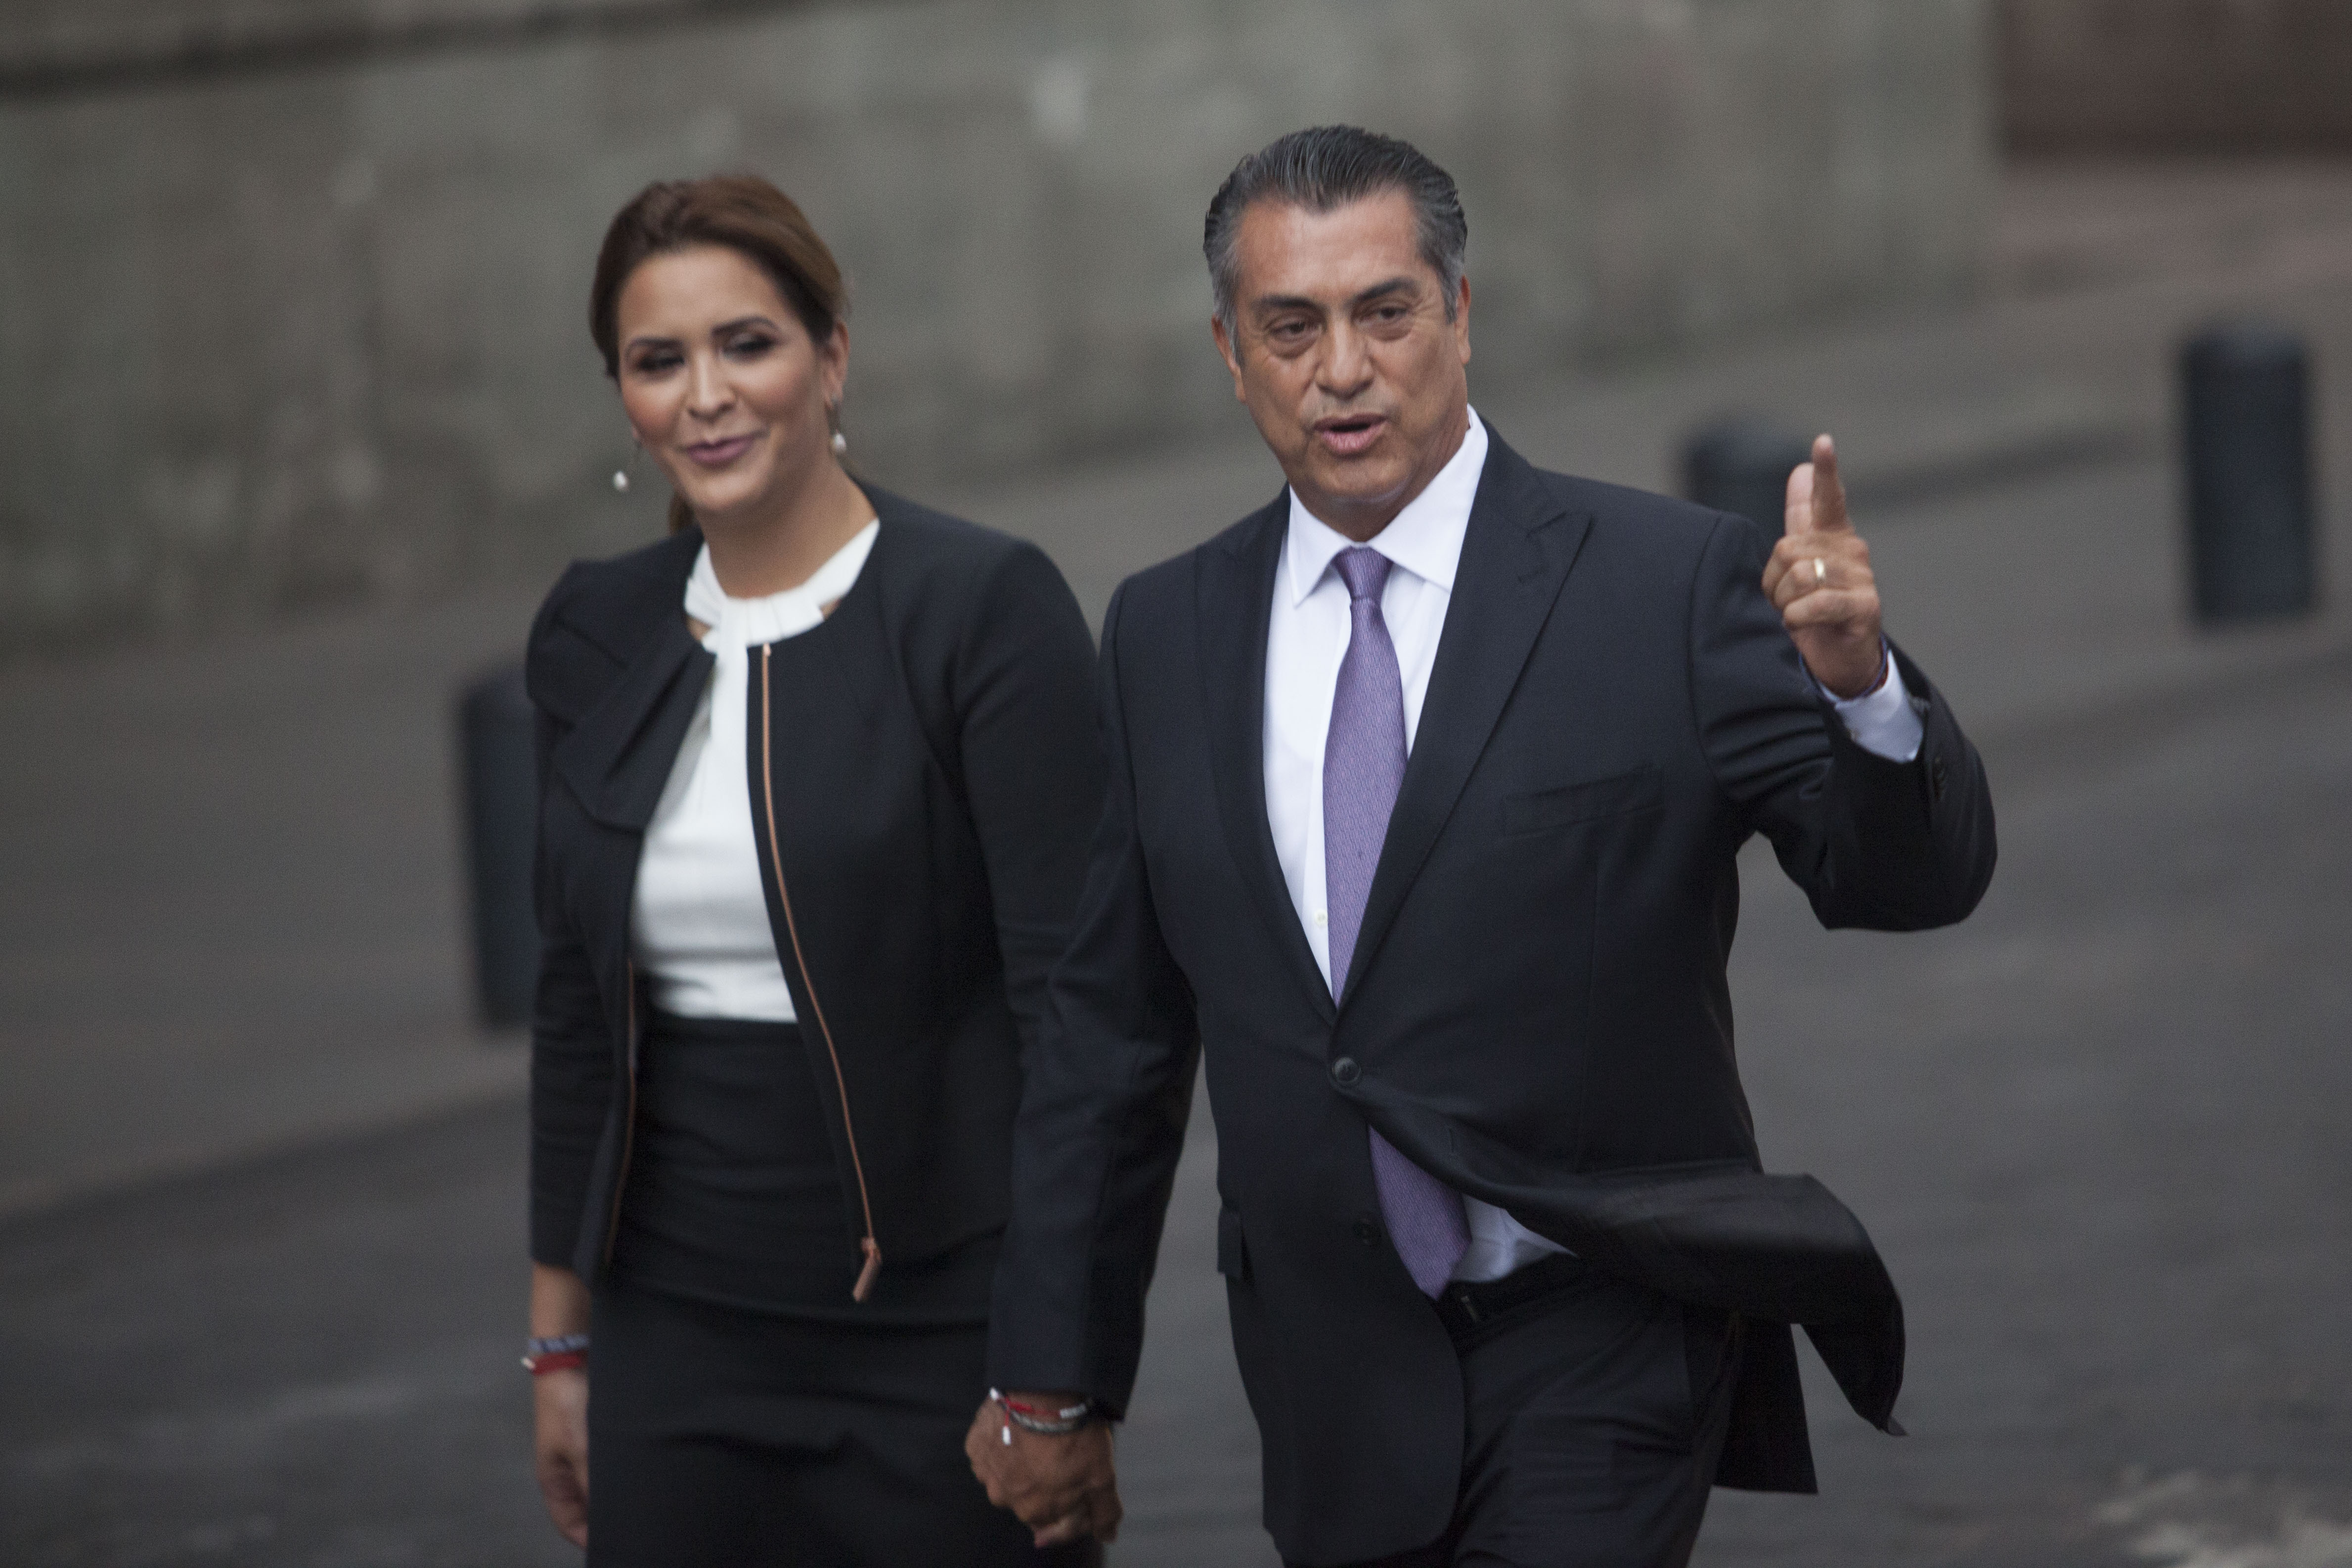 El candidato independiente  Jaime Rodríguez "El Bronco" acompañado de su esposa  Adalina Dávalos al entrar a Palacio de Minería donde se llevó a cabo el primer debate presidencial. 